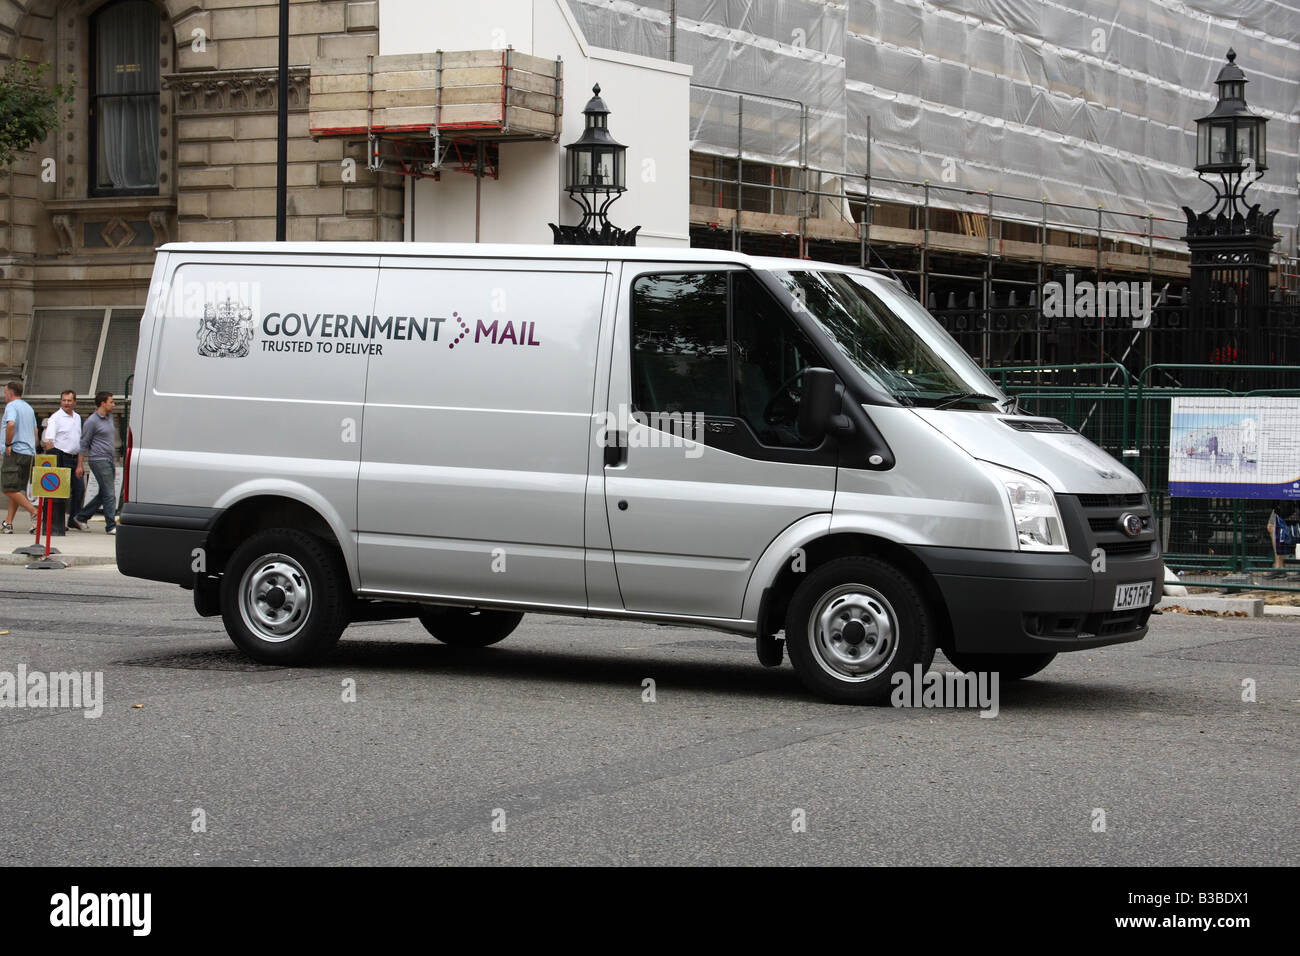 Un gouvernement mail delivery van garé sur Whitehall à l'entrée de Downing Street, Westminster, Londres, Angleterre, Royaume-Uni Banque D'Images